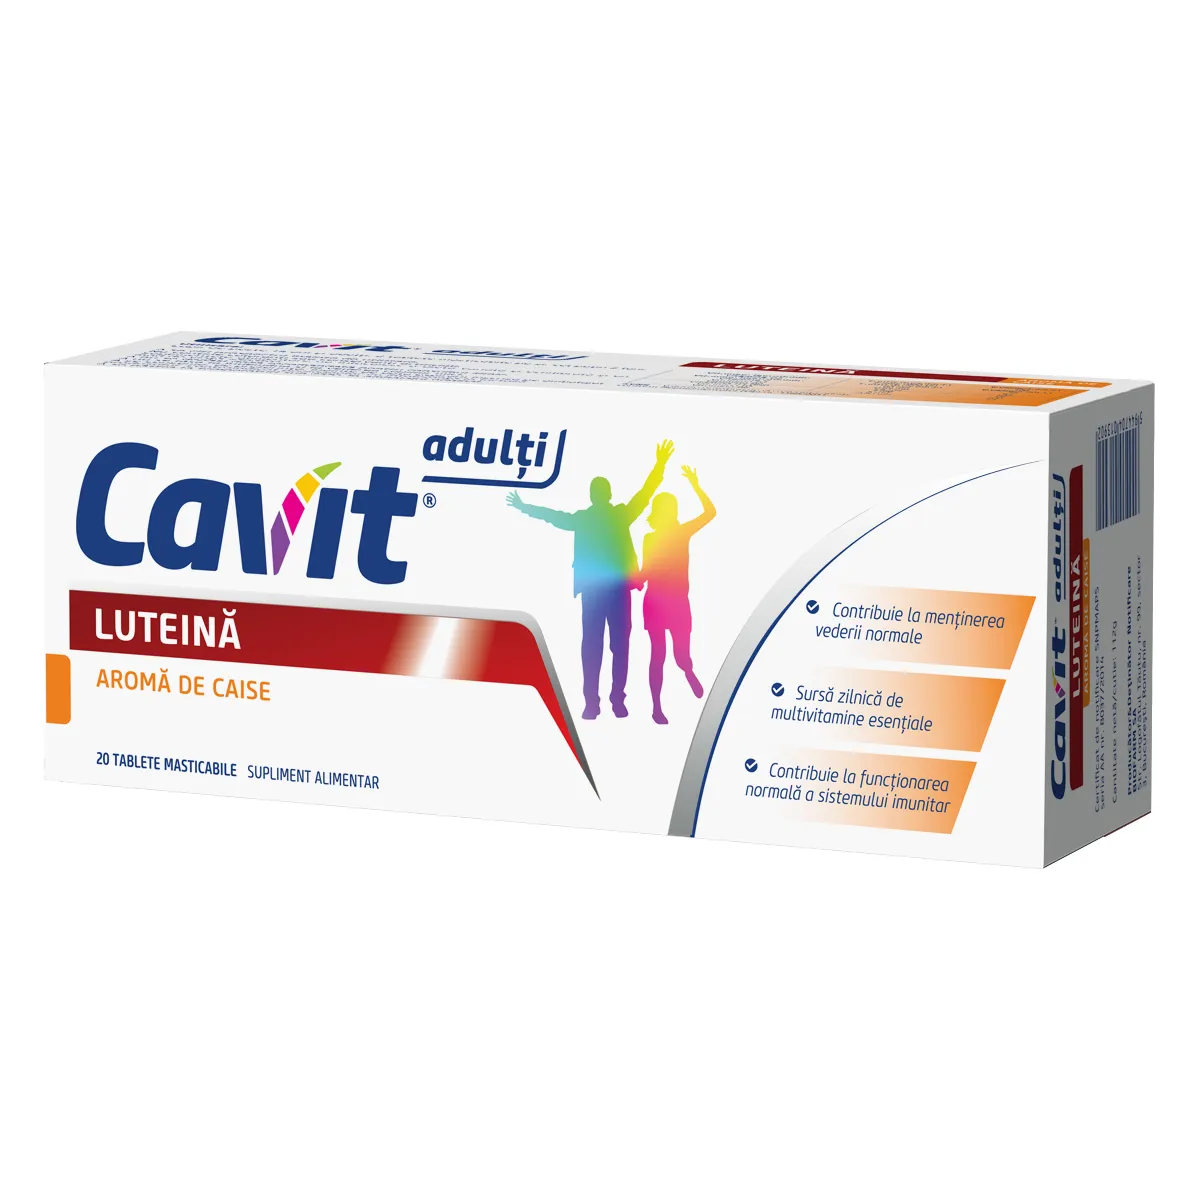 Cavit 9 plus luteina, 20 tablete, Biofarm